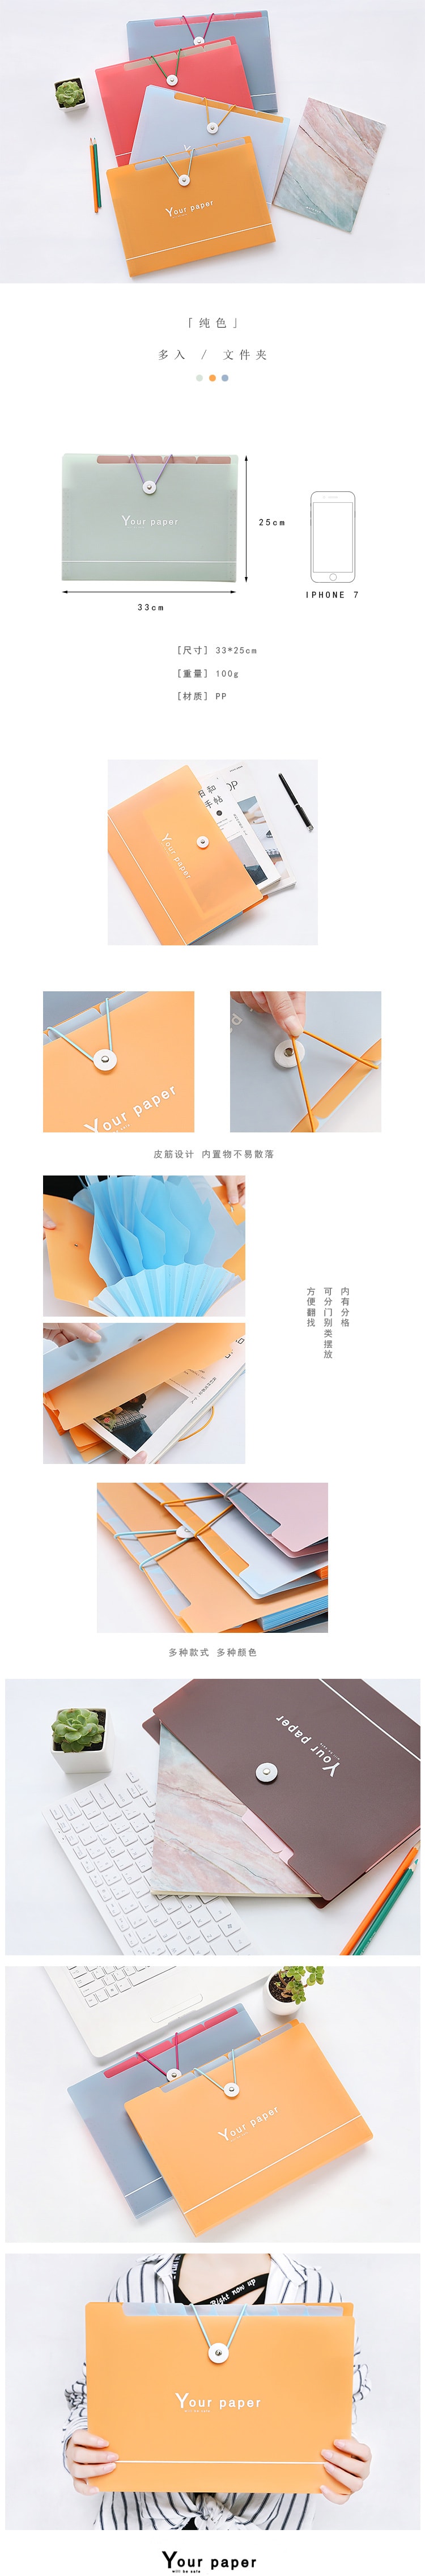 【中国直邮】英尼 办公文具 多层风琴包文件袋 粉色